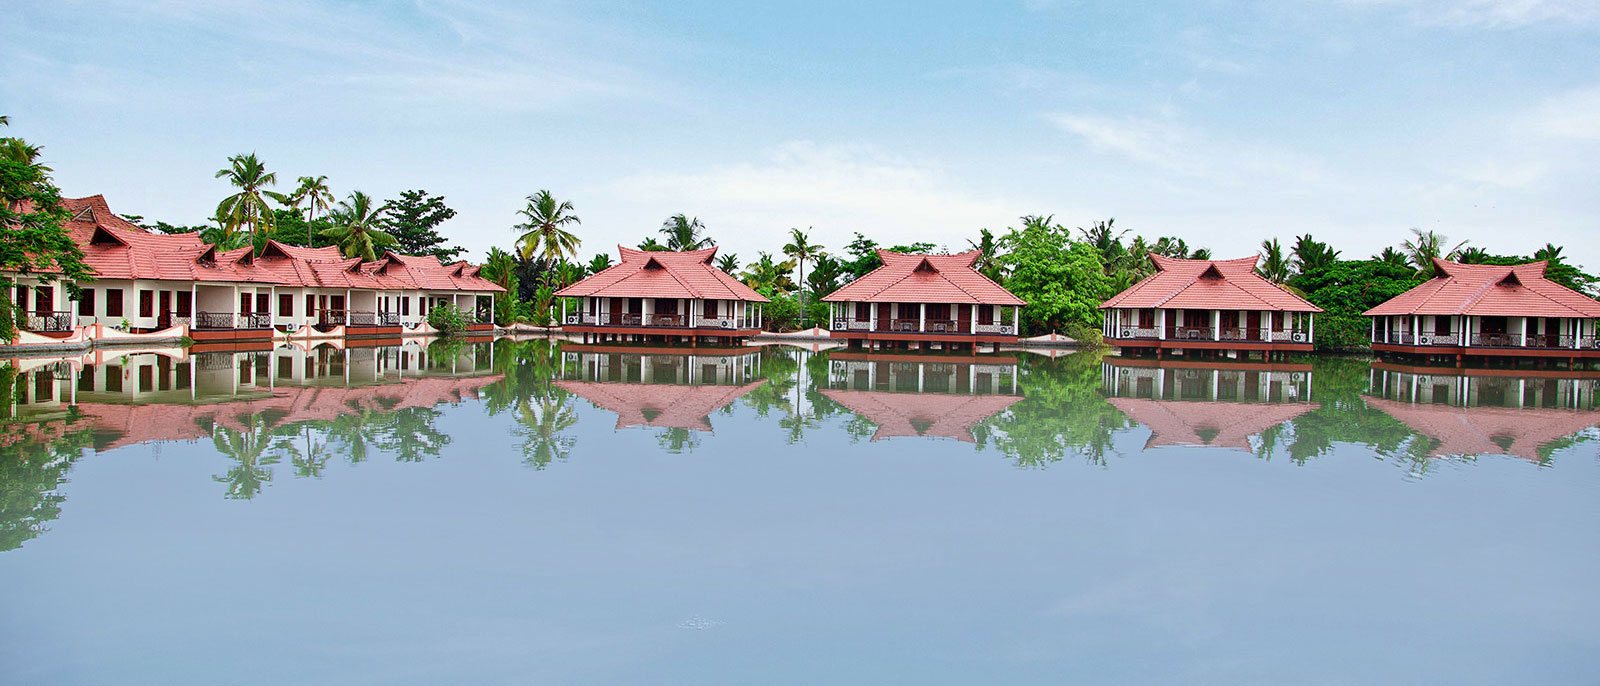 Weddings in Lake Palace Resort, Kerala